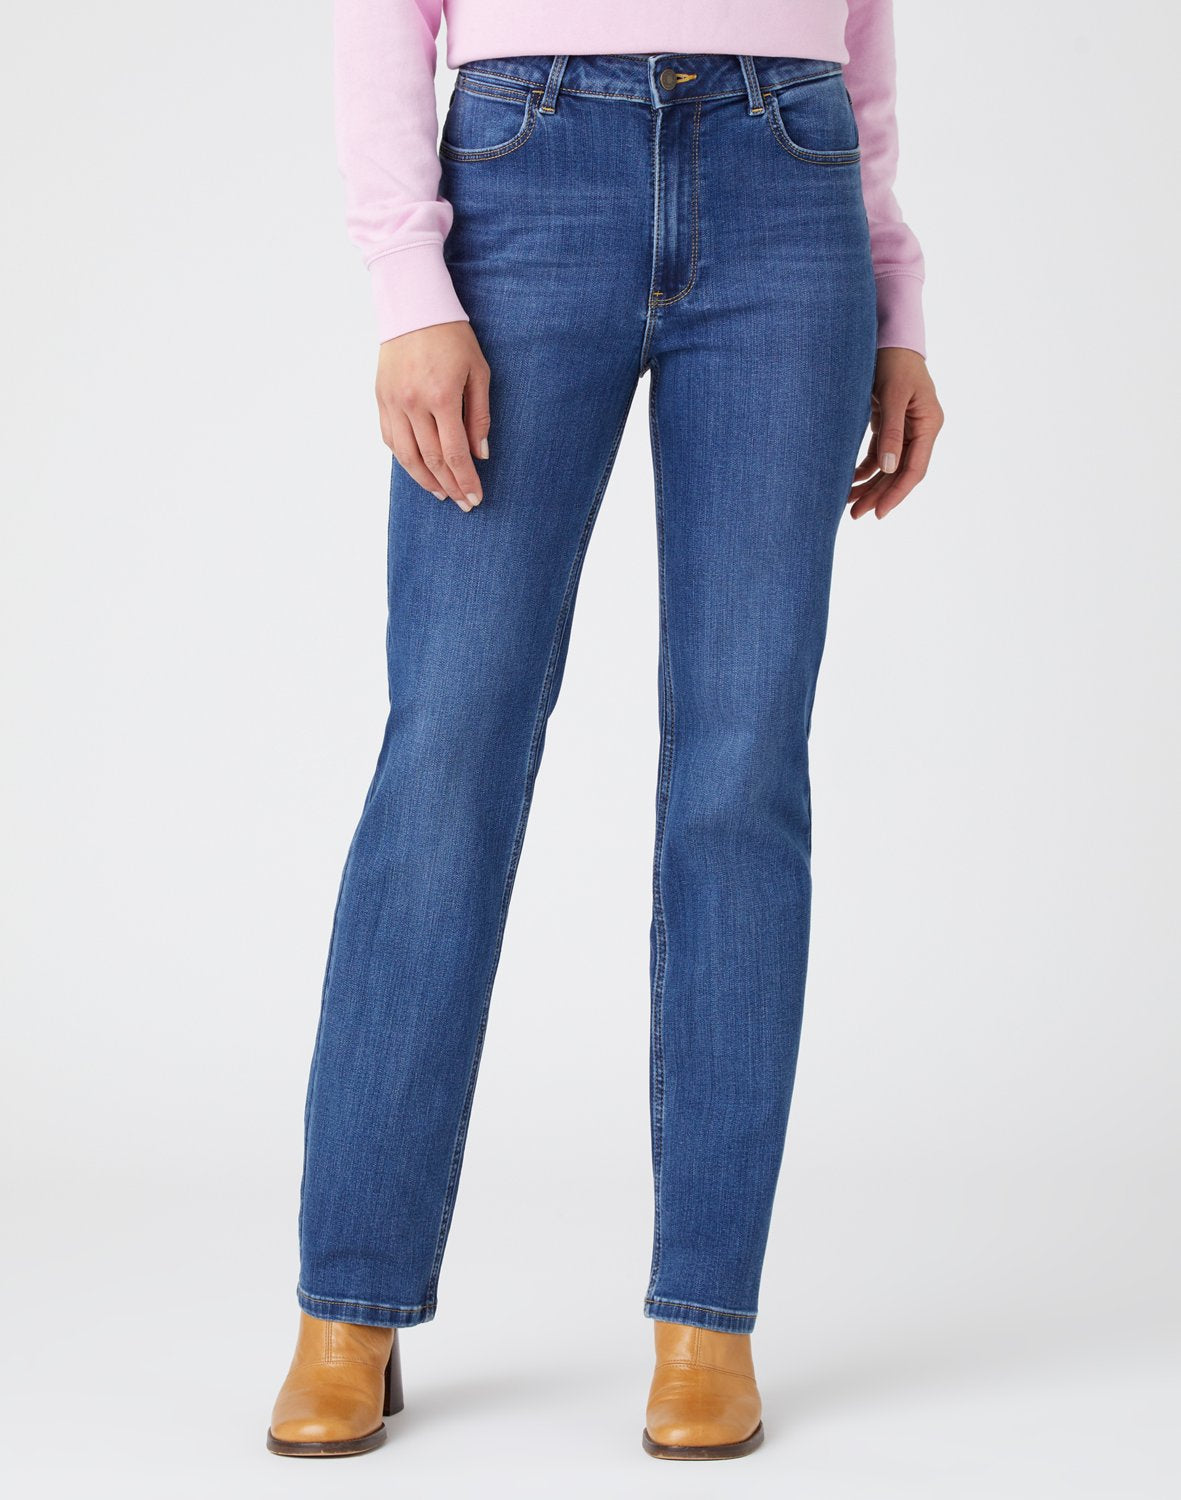 Wrangler Straight Jeans | Women's Straight Fit Jeans – Sam Turner & Sons